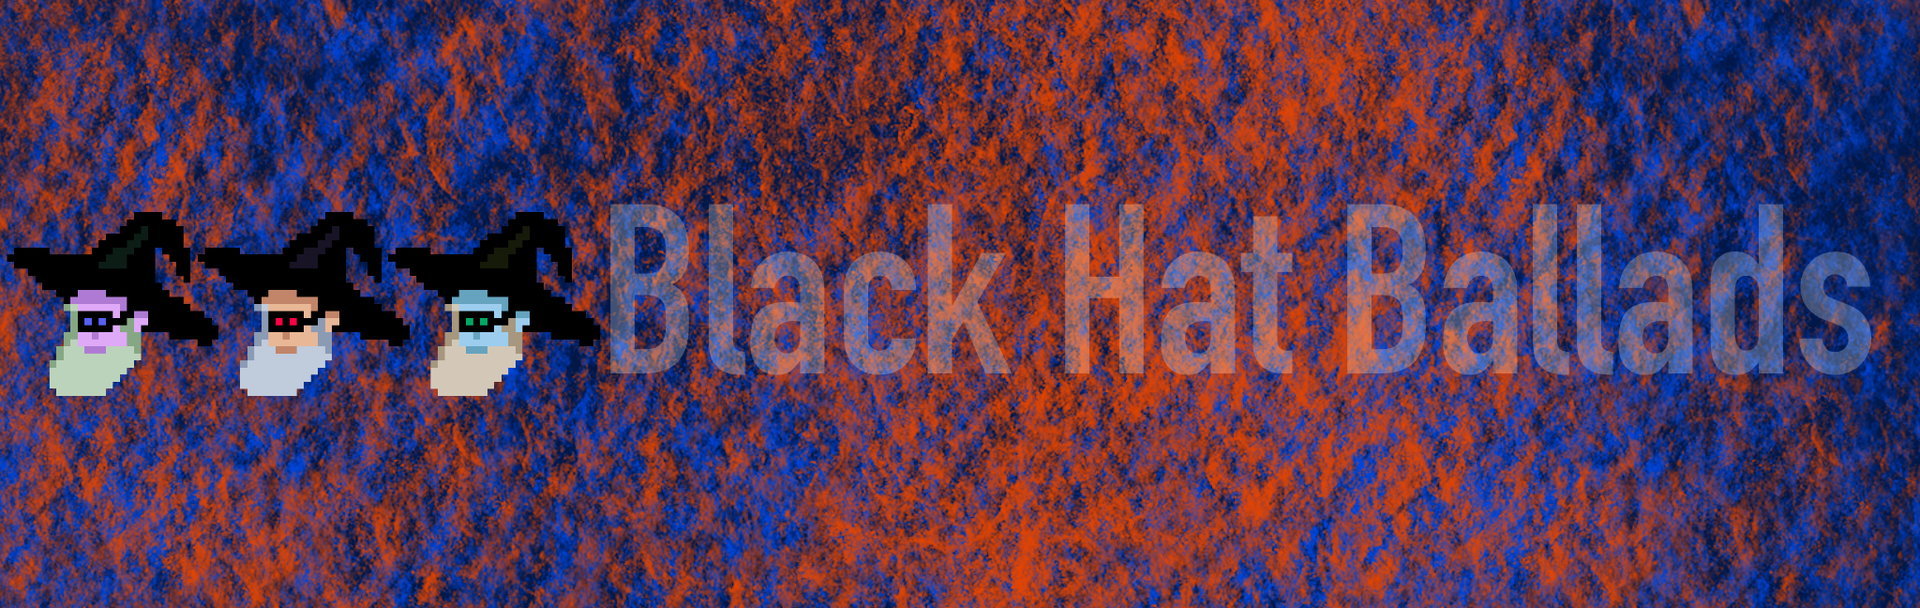 Black Hat Blog cover image